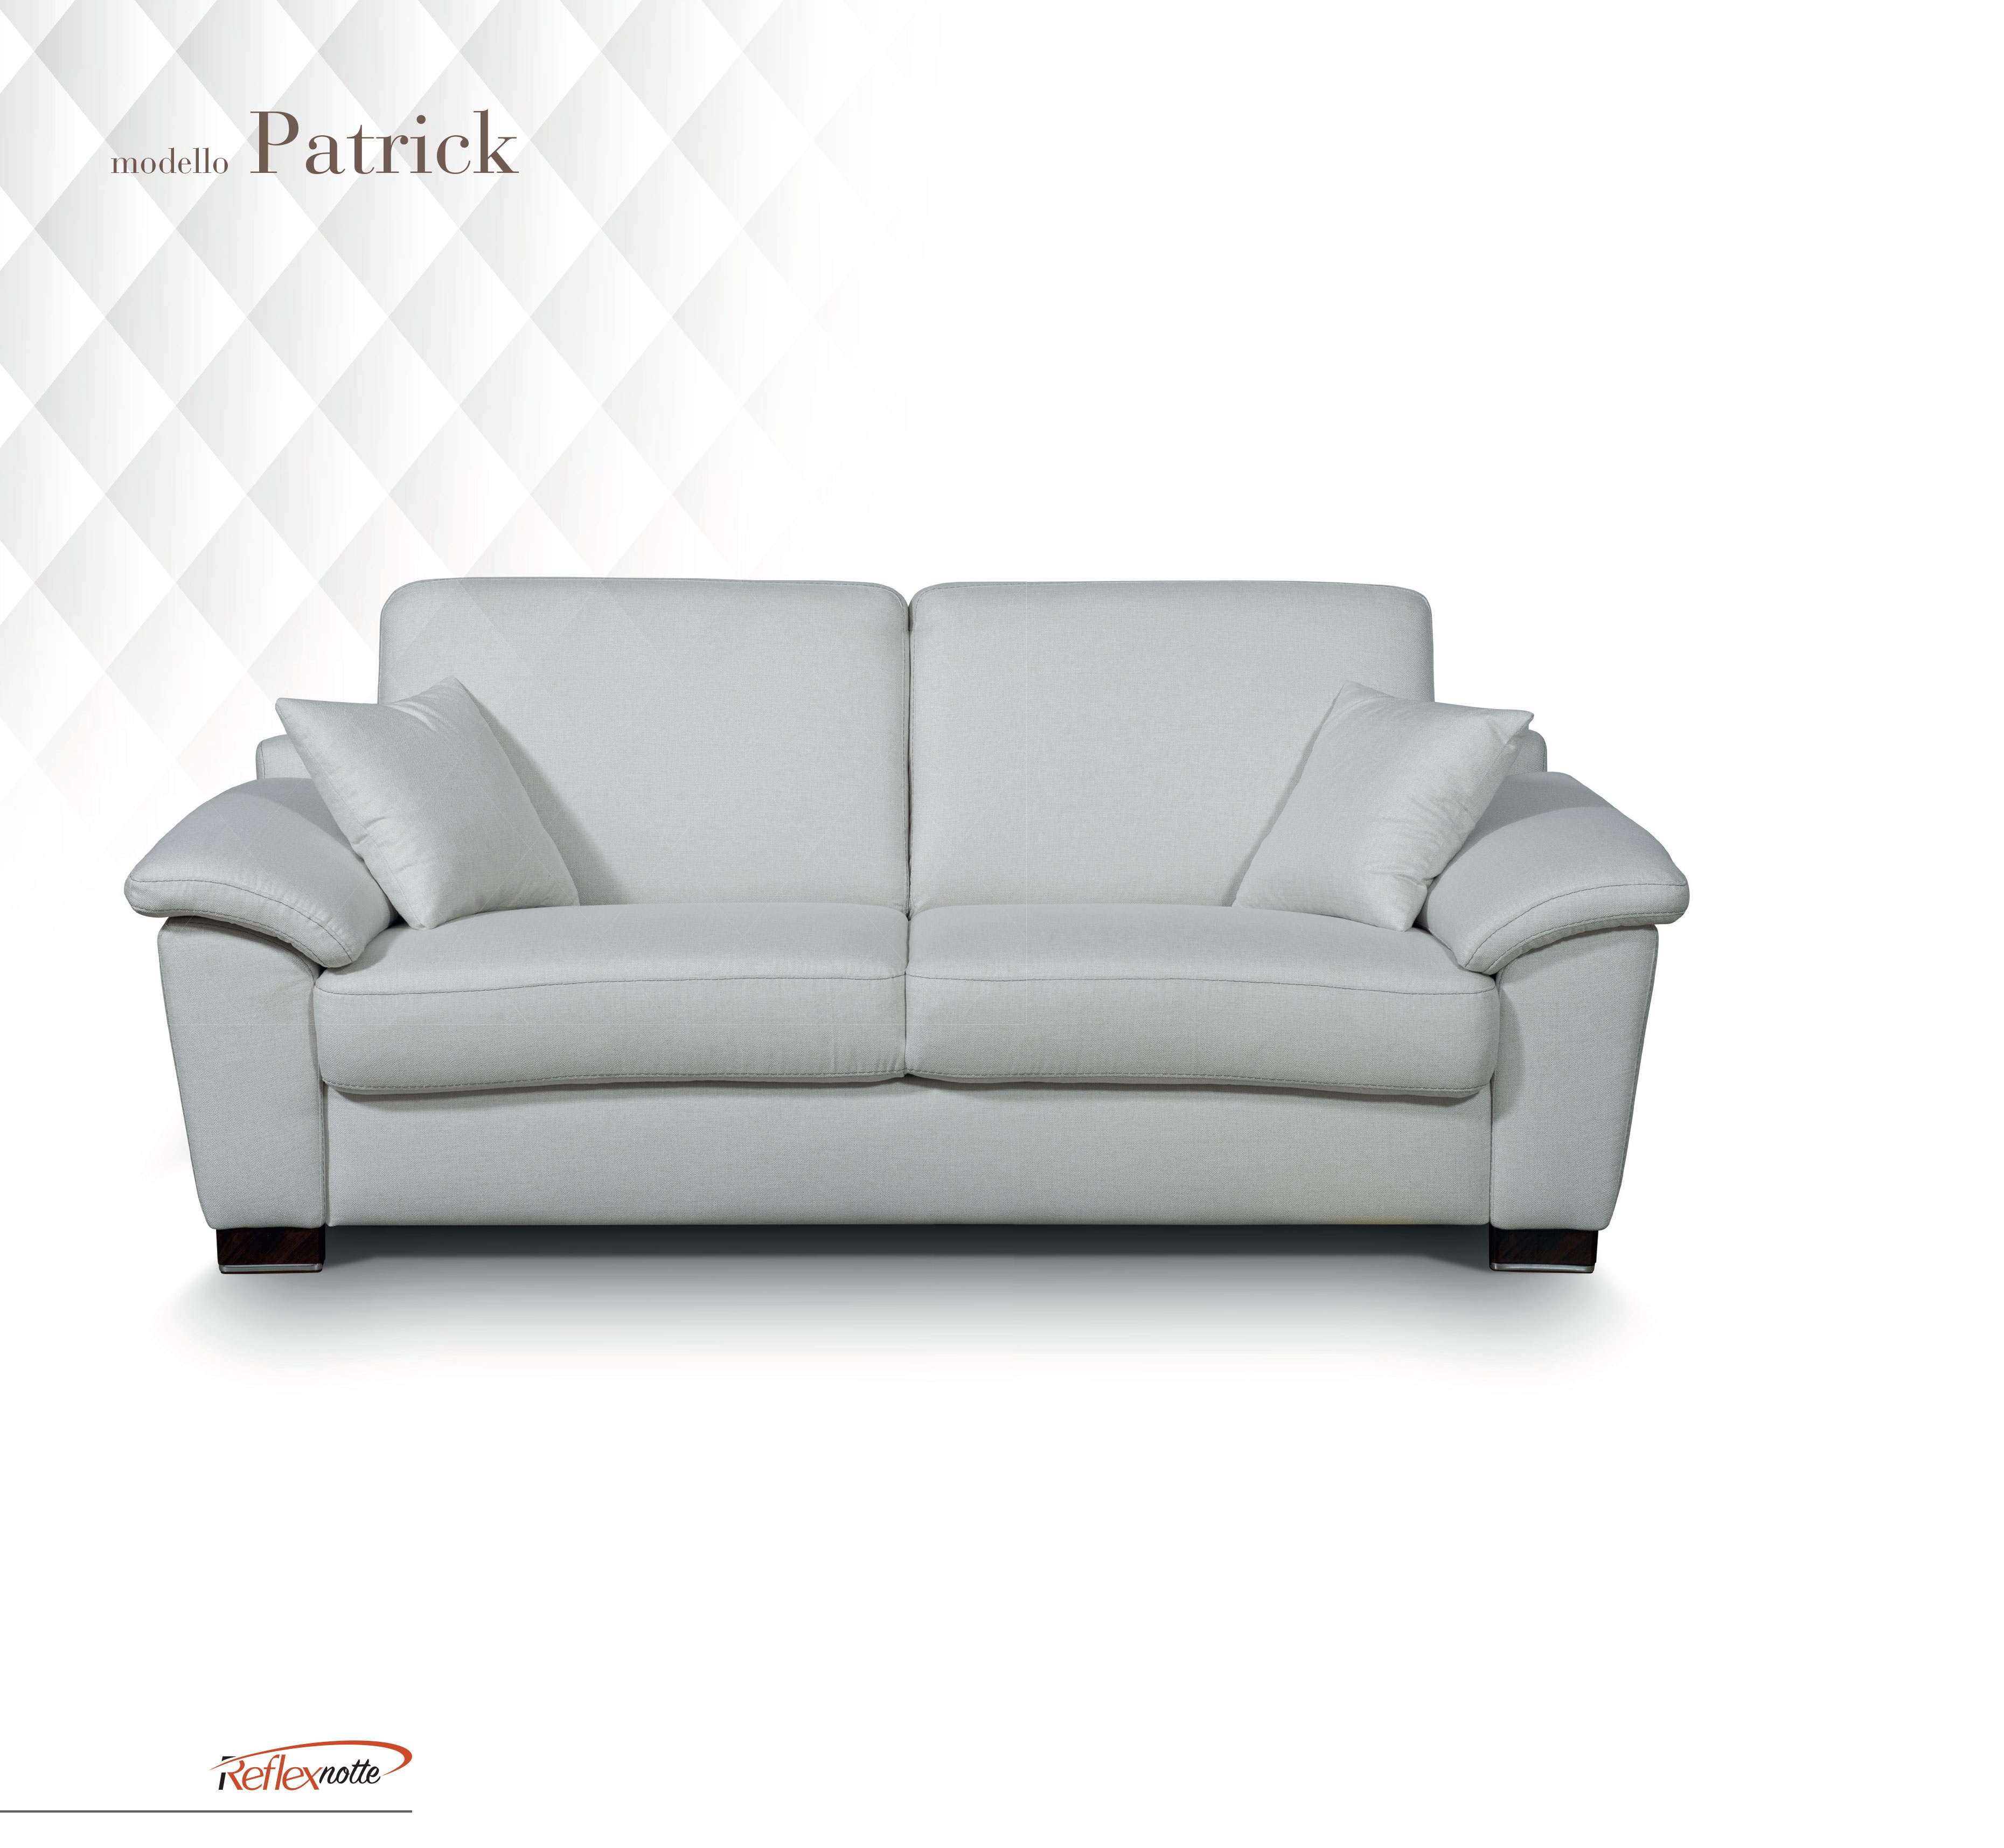 Patrick 3 személyes fehér kanapéágy - NOVETEX - Ágyban a legjobb!